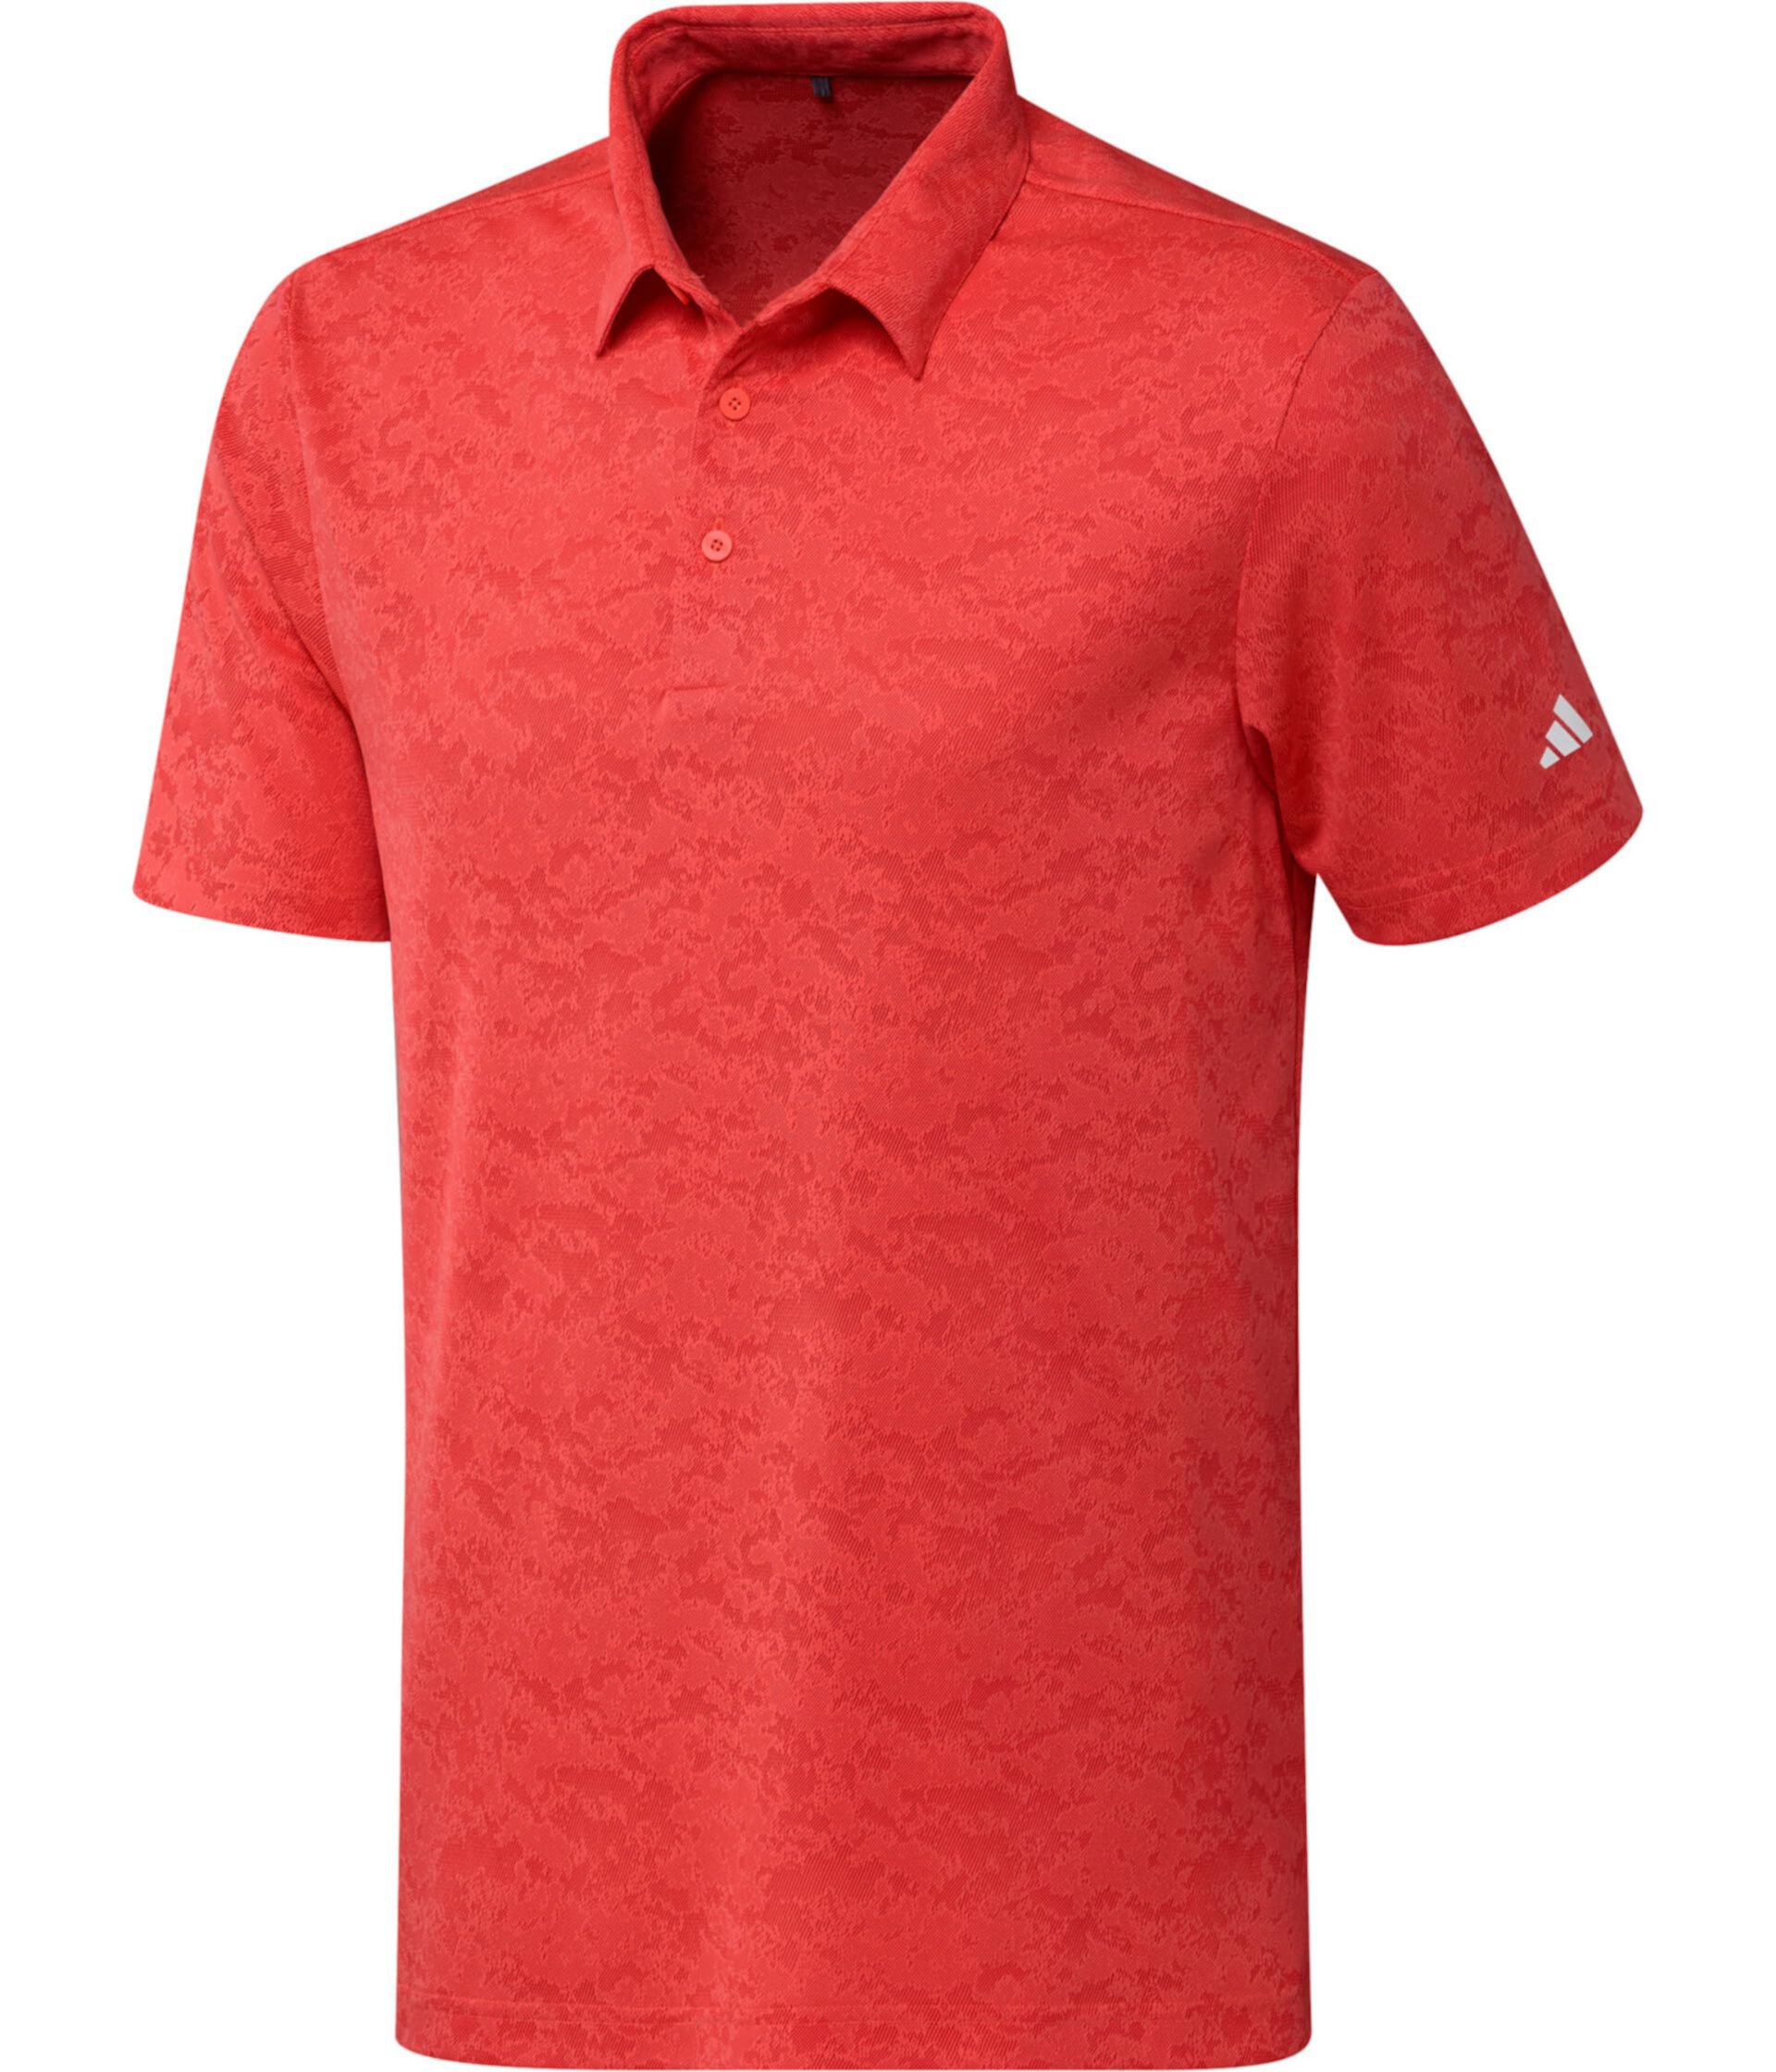 Мужская рубашка поло для гольфа Adidas Adidas